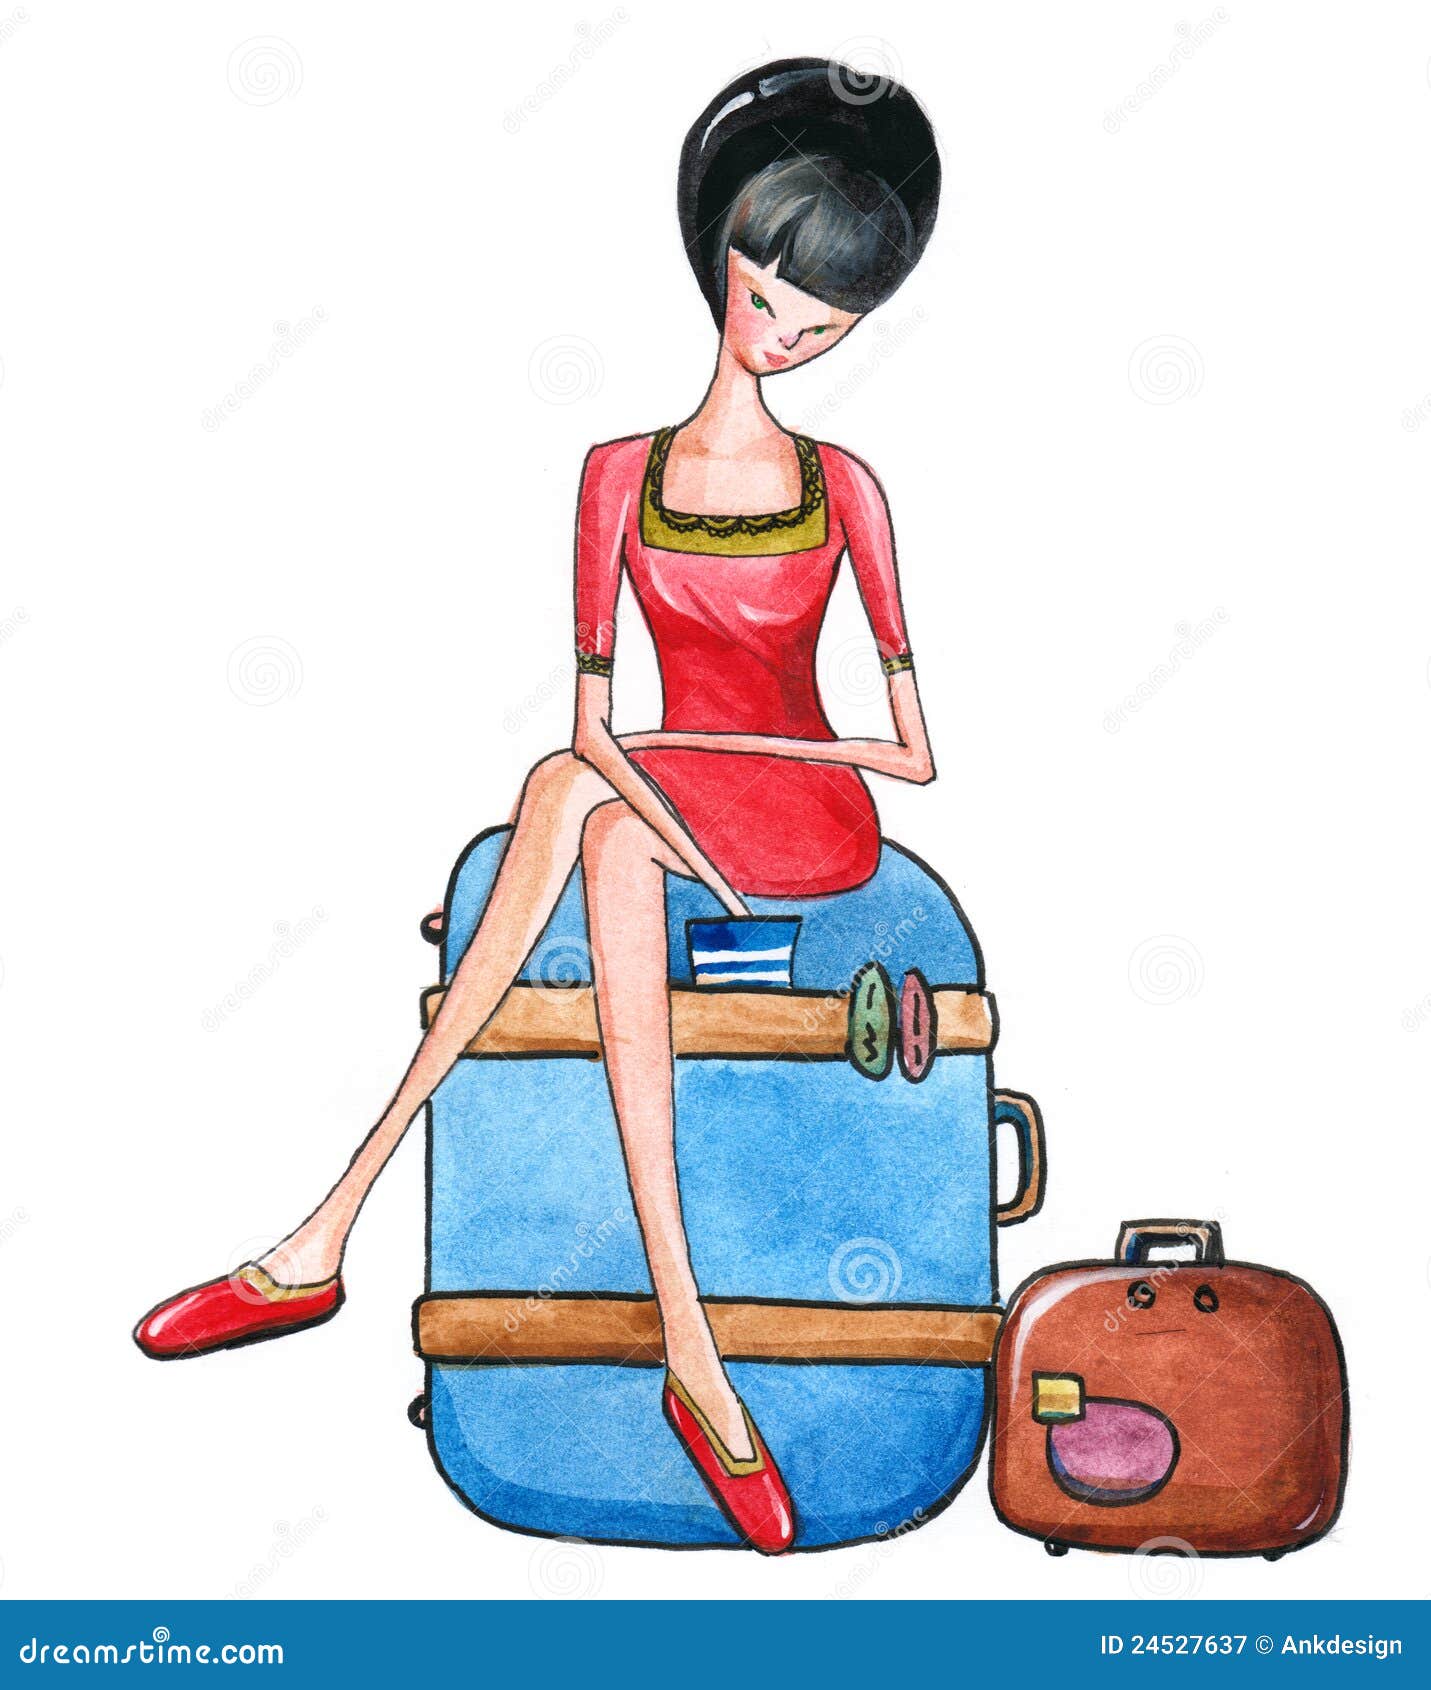 Перед отъездом мама. Человек сидит на чемодане. Чемодан иллюстрация. Сижу на чемоданах. Девушка сидит на чемодане.